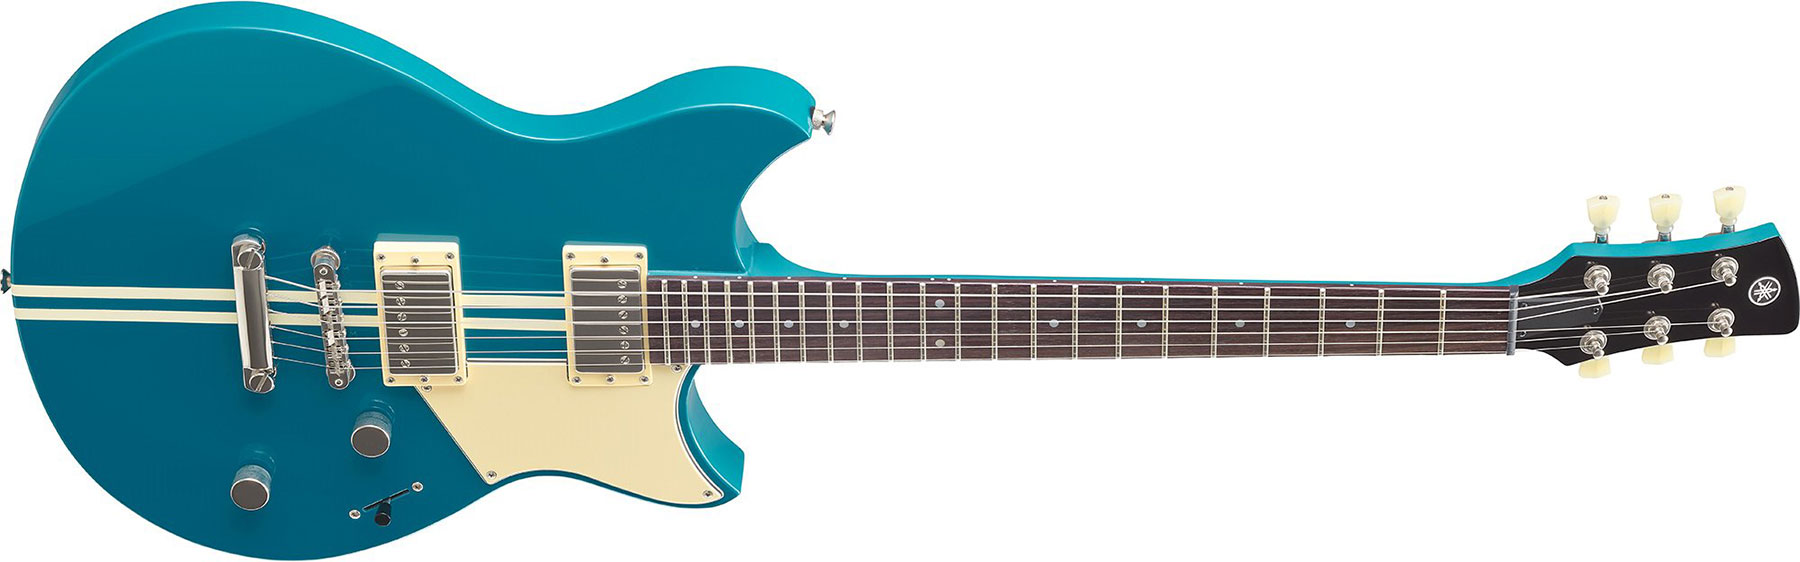 Yamaha Rse20 Revstar Element Hh Ht Rw - Swift Blue - Guitarra eléctrica de doble corte - Variation 1